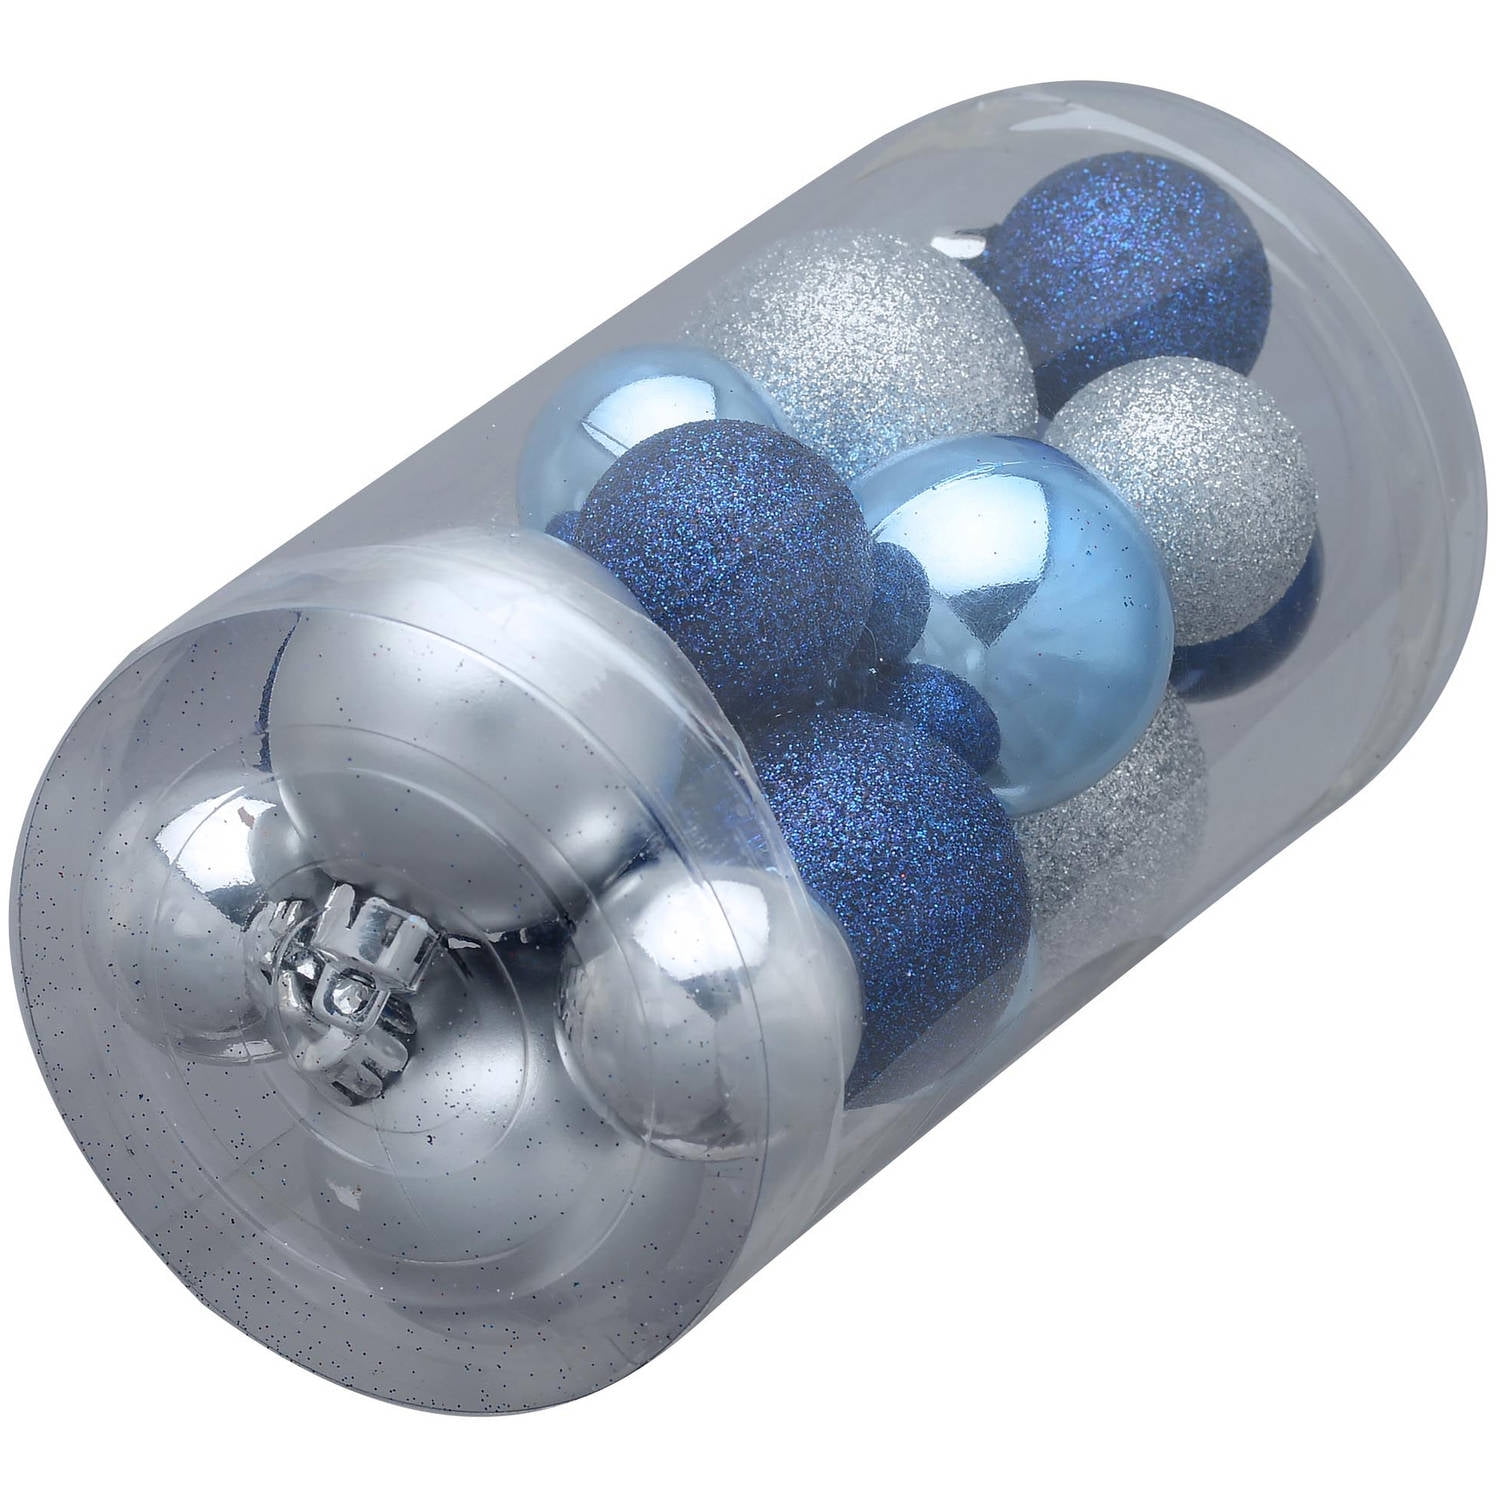 6” Blue & Silver Drop Ornament